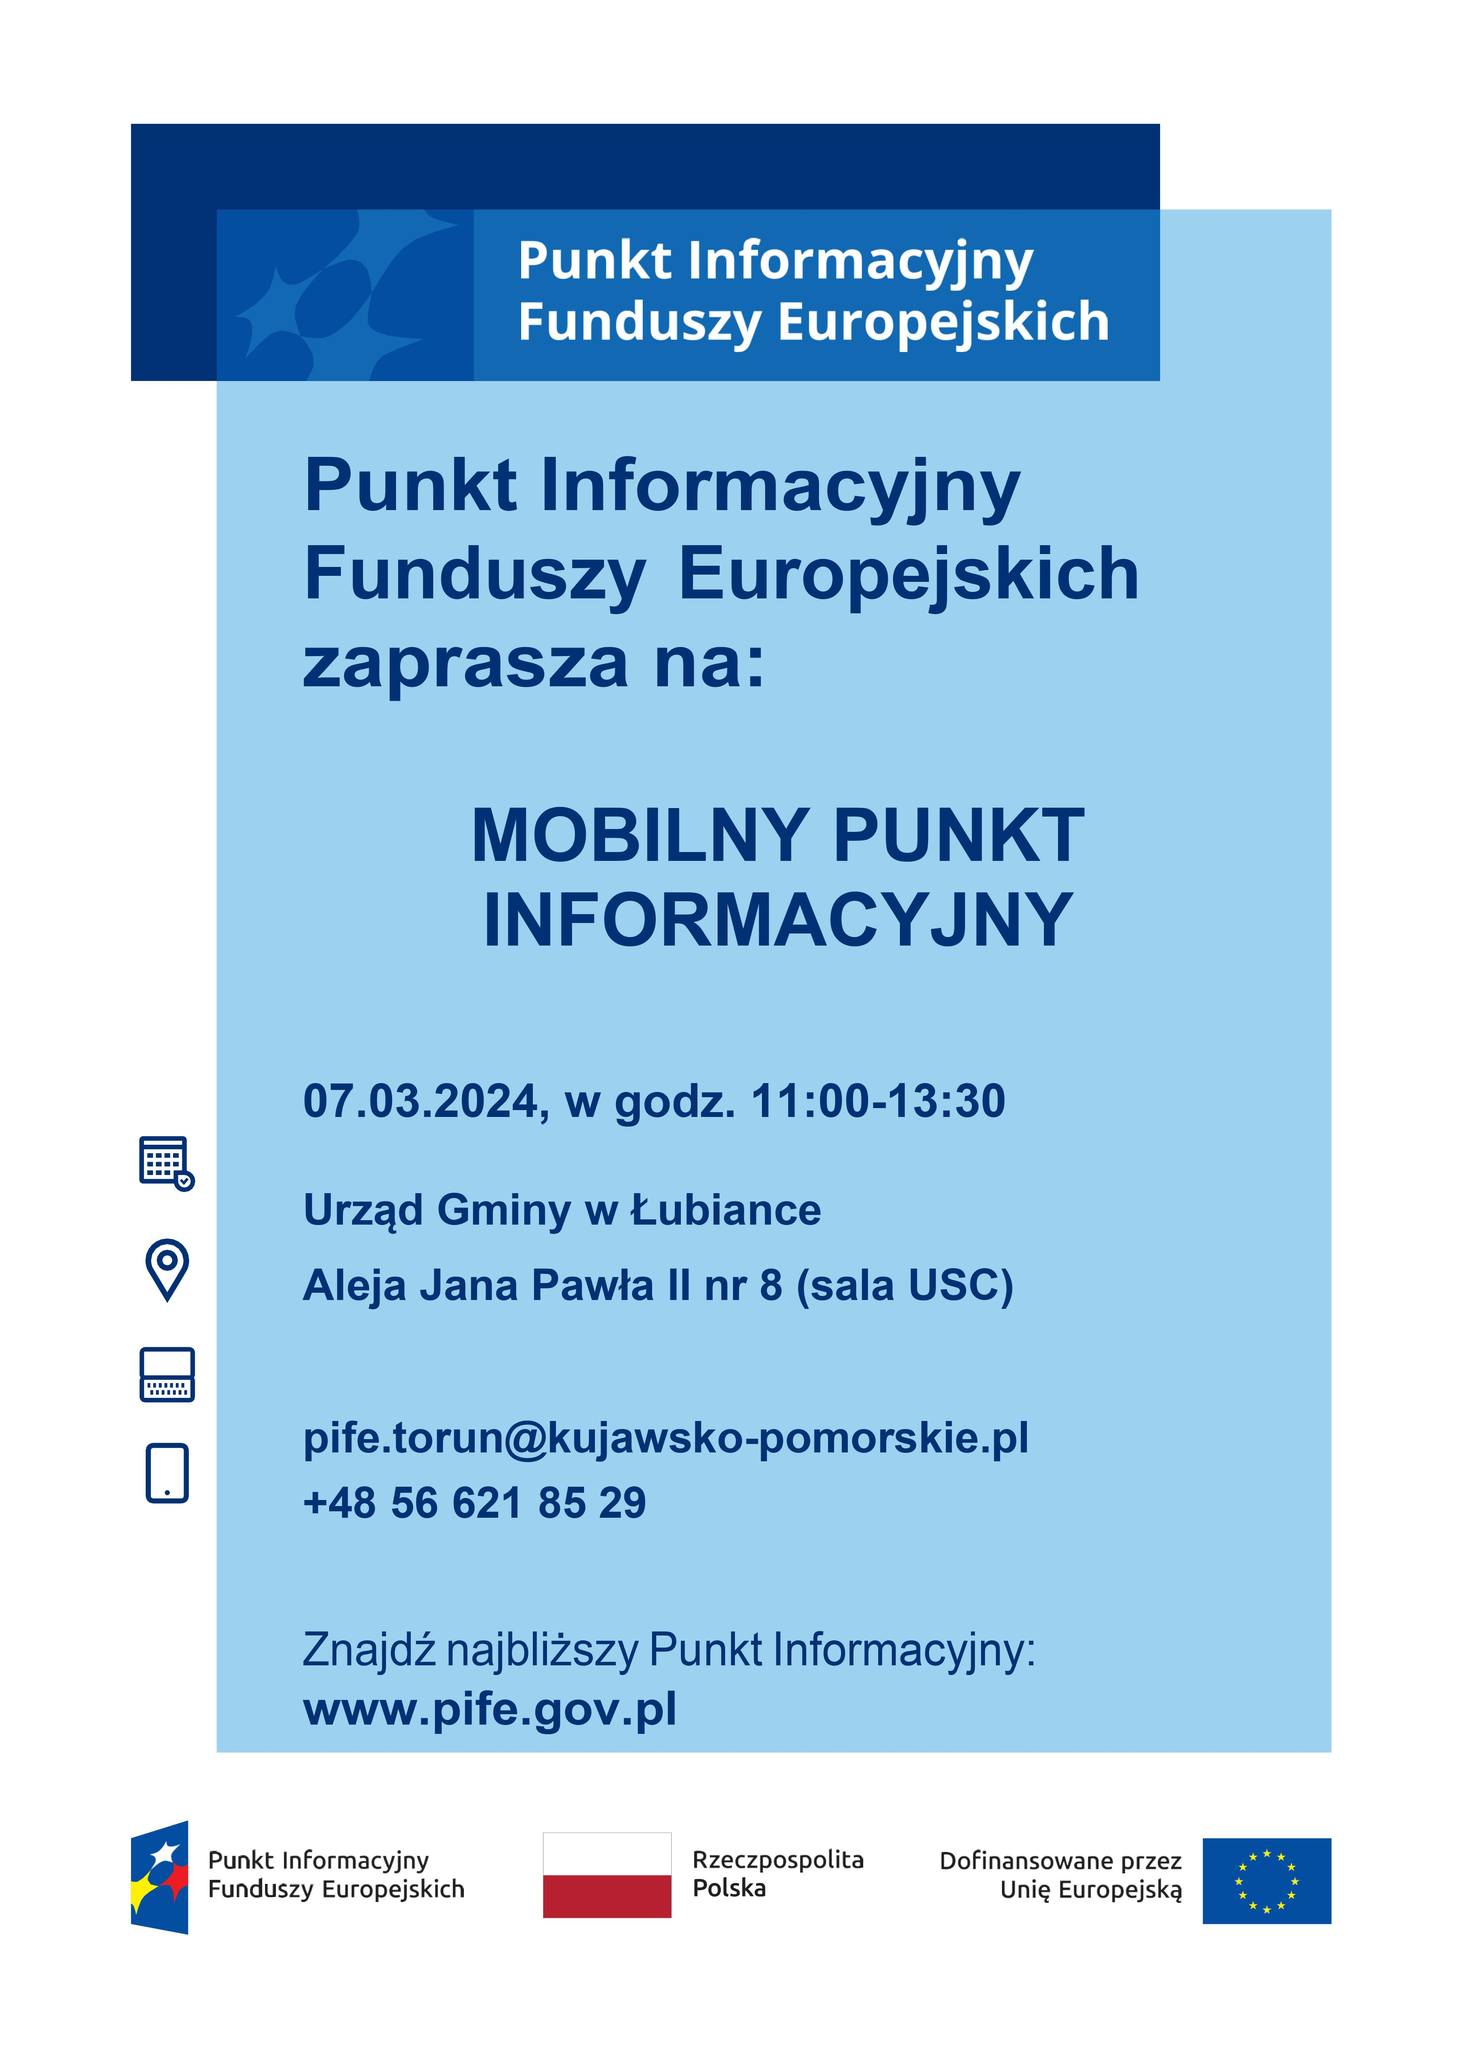 Mobilny Punkt Informacyjny Funduszy Europejskich - 07.03.2024 r.